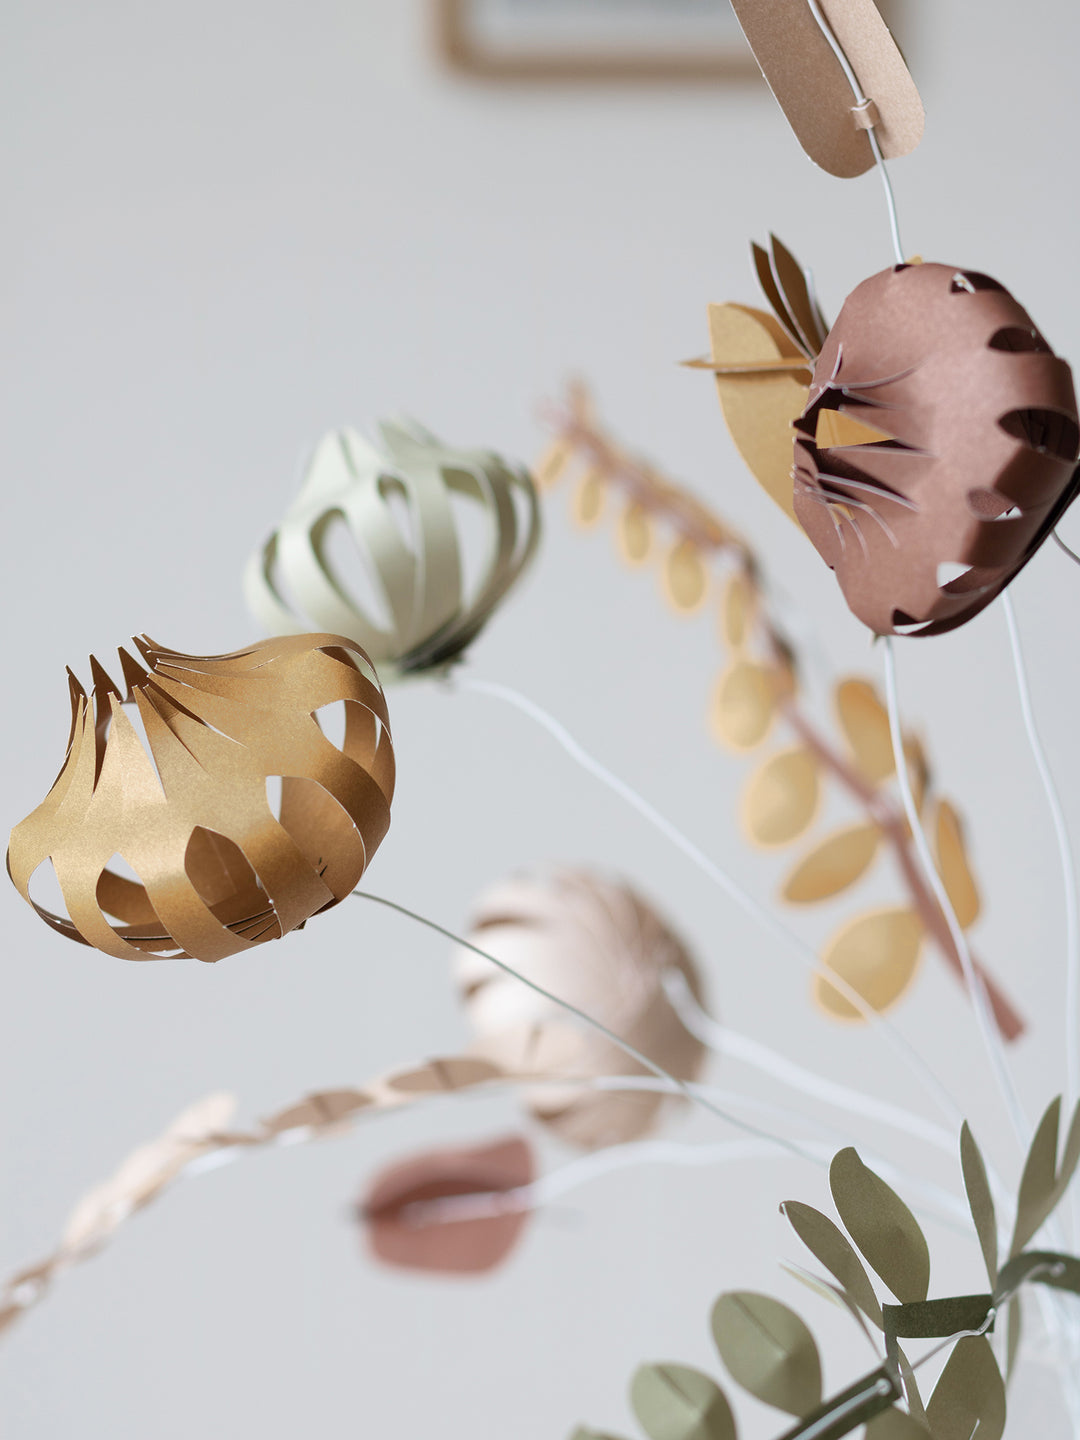 Field Flowers by Jurianne Matter - large set